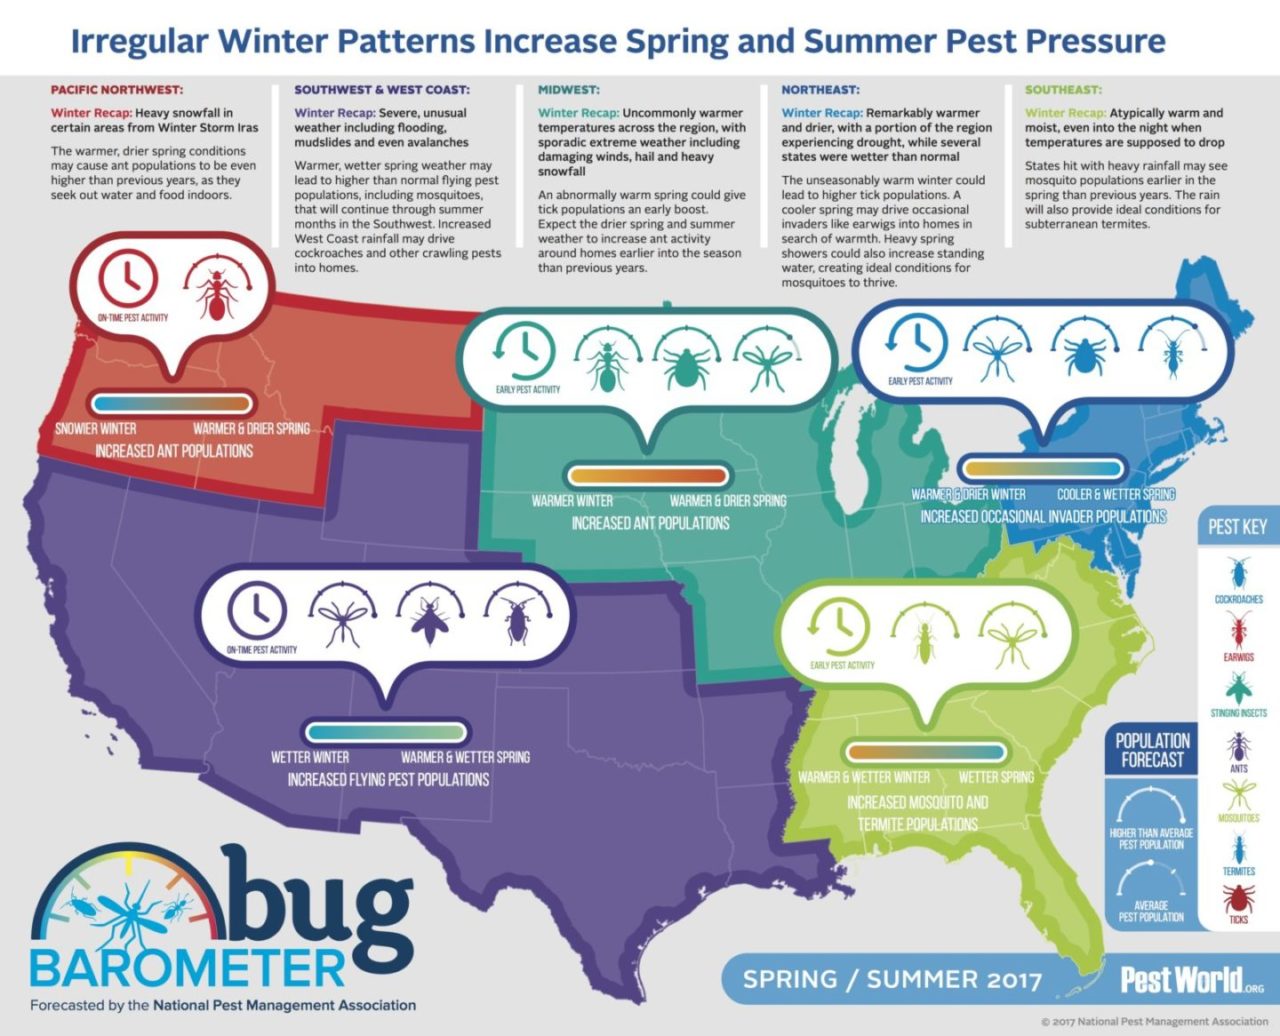 bug-barometer-spring-2017-infographic_final.jpg